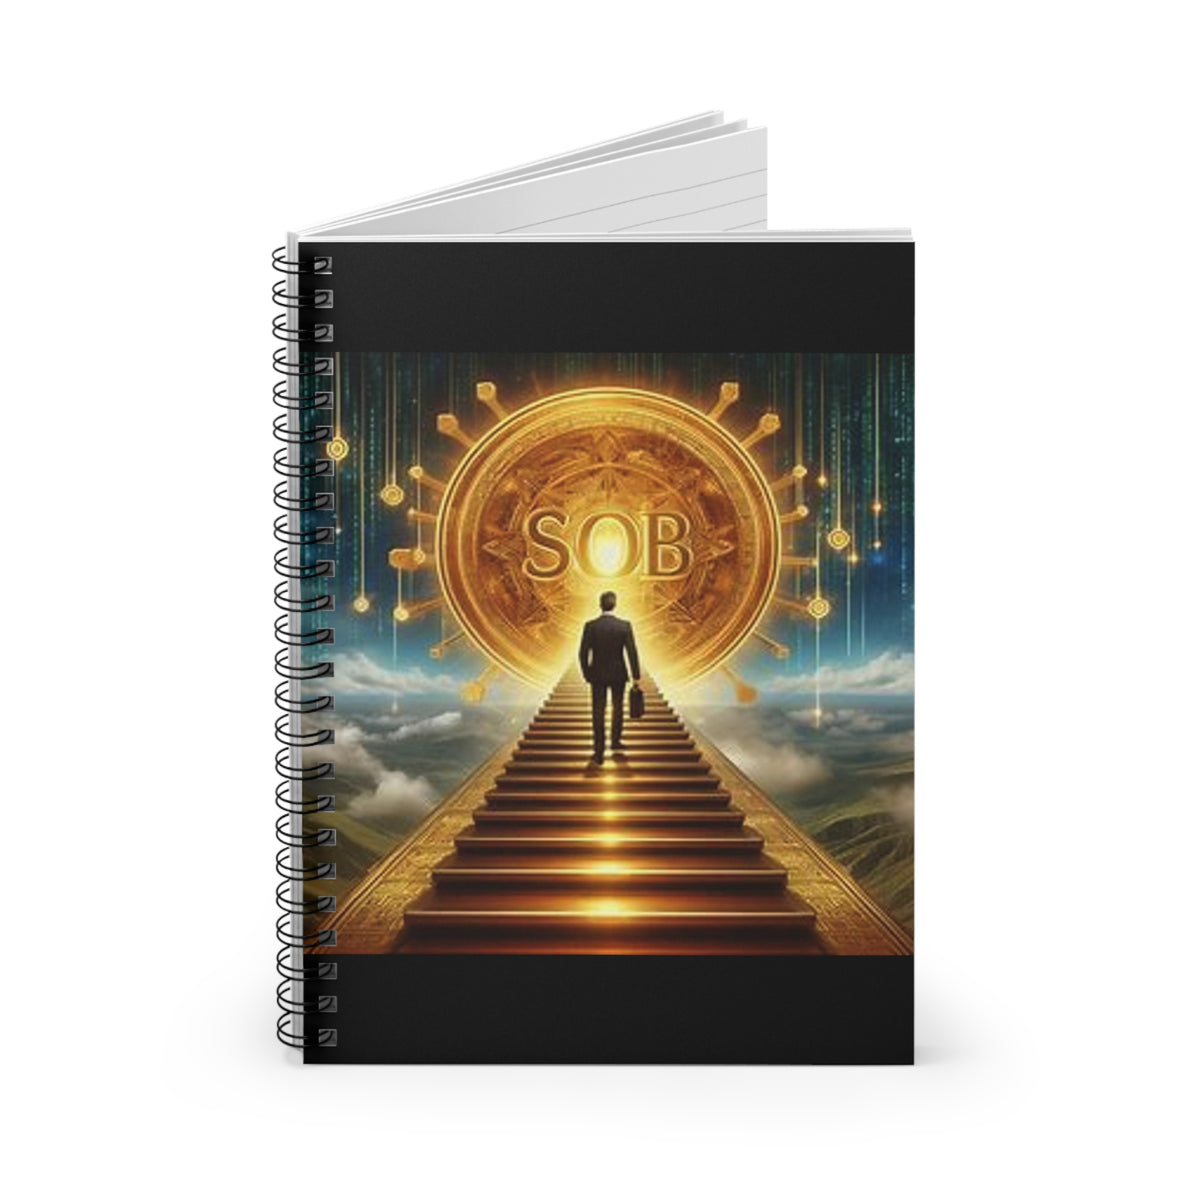 Ascension SOB Spiral Notebook - Ruled Line